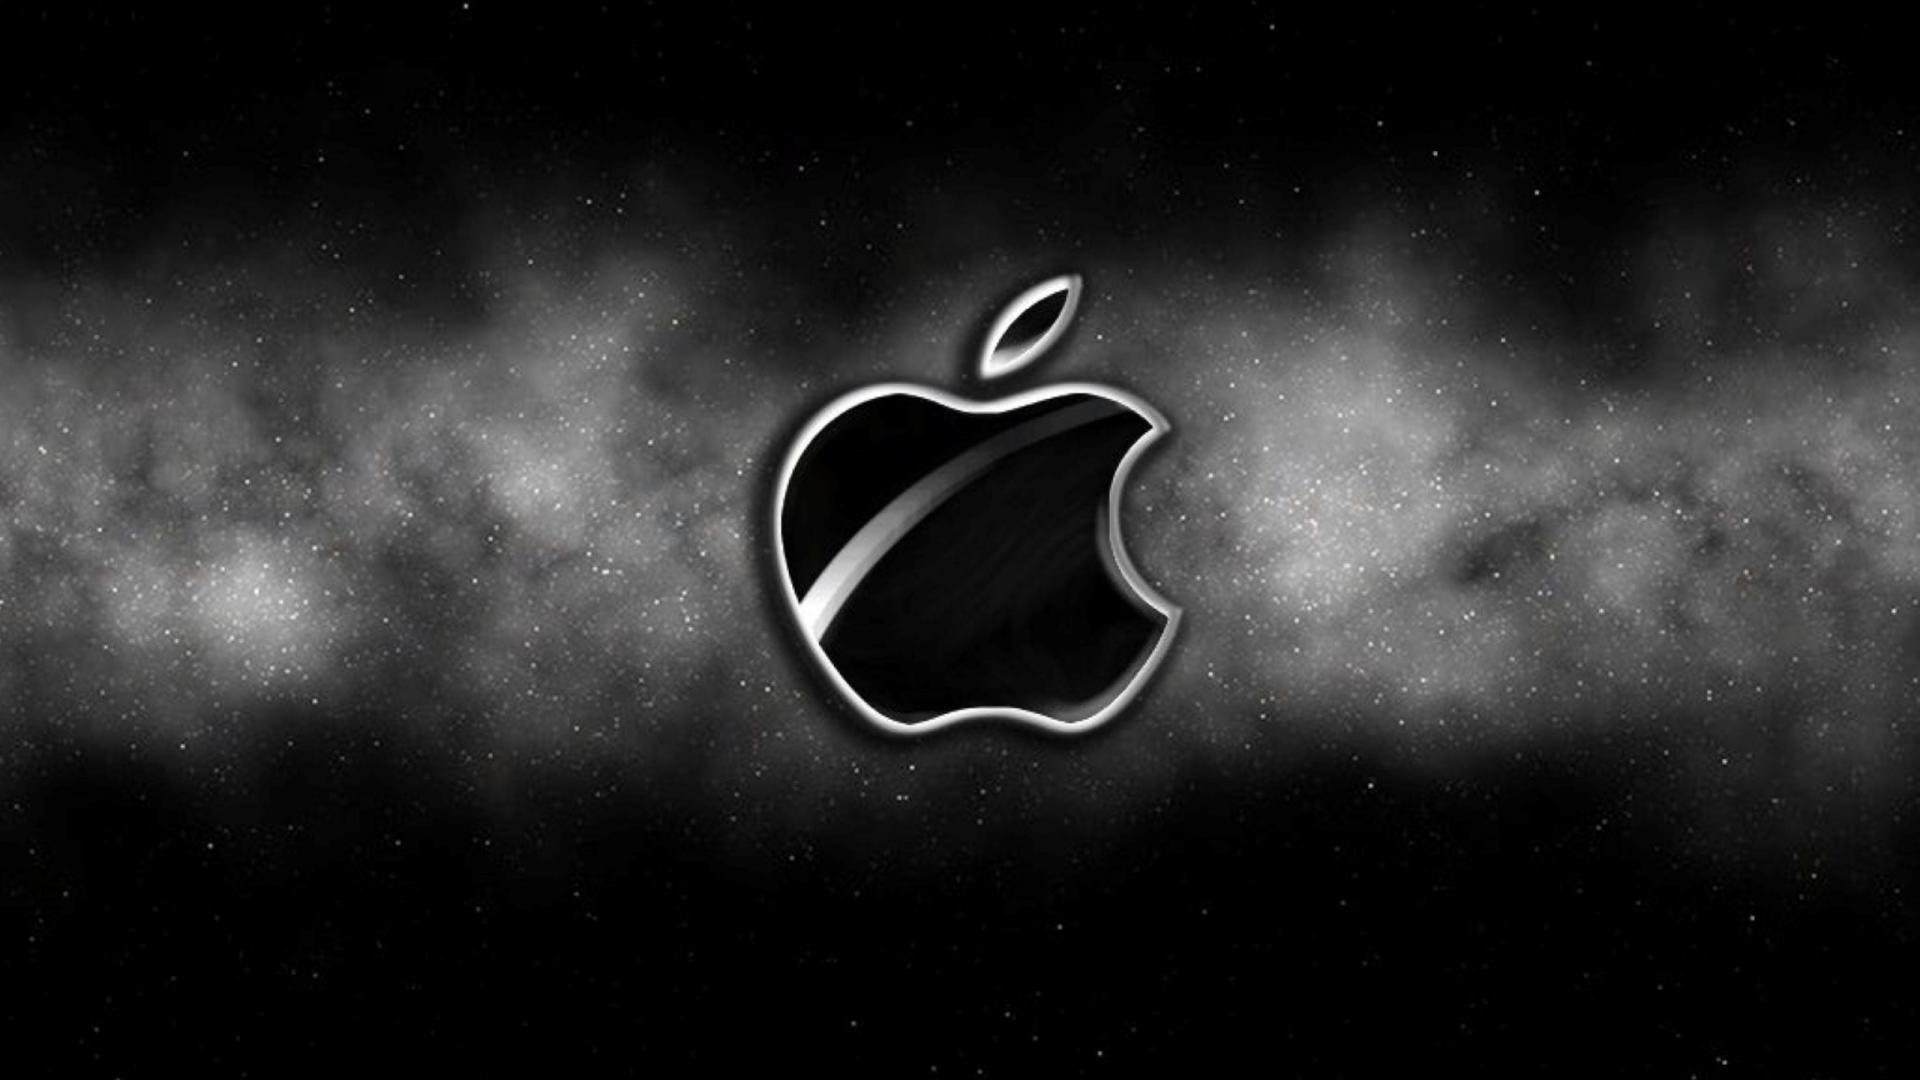 apple wallpaper hd,nero,cielo,atmosfera,bianco e nero,font